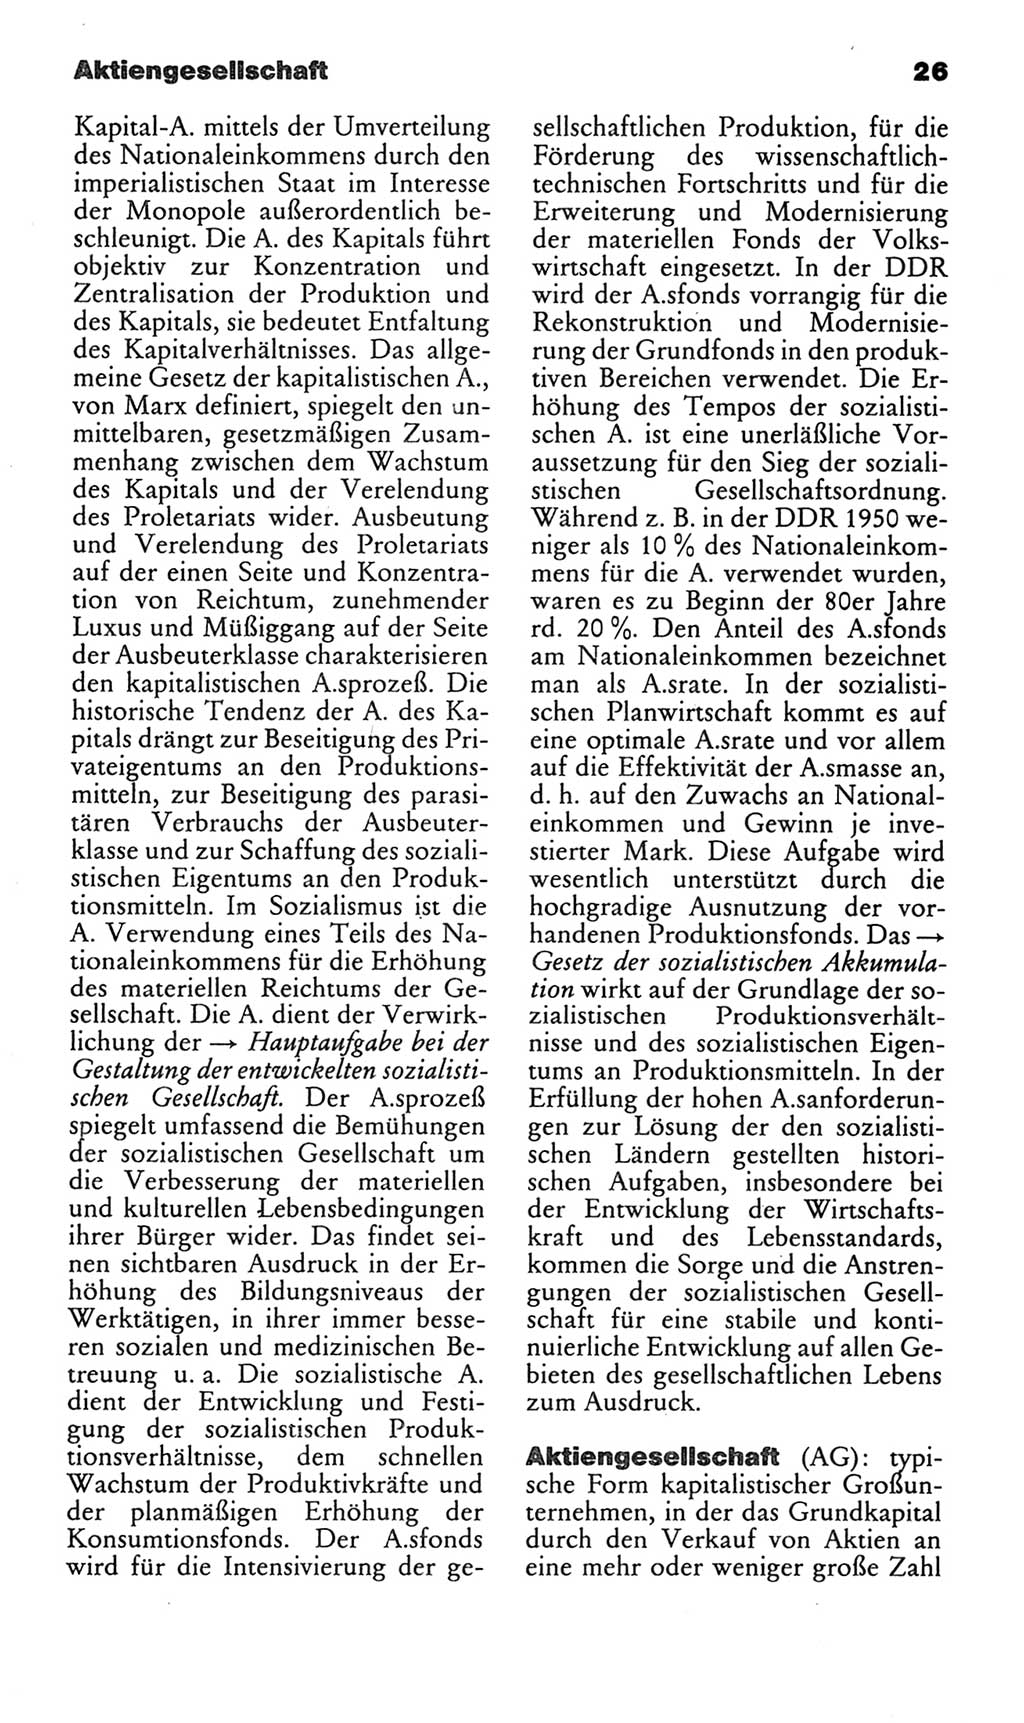 Kleines politisches Wörterbuch [Deutsche Demokratische Republik (DDR)] 1986, Seite 26 (Kl. pol. Wb. DDR 1986, S. 26)